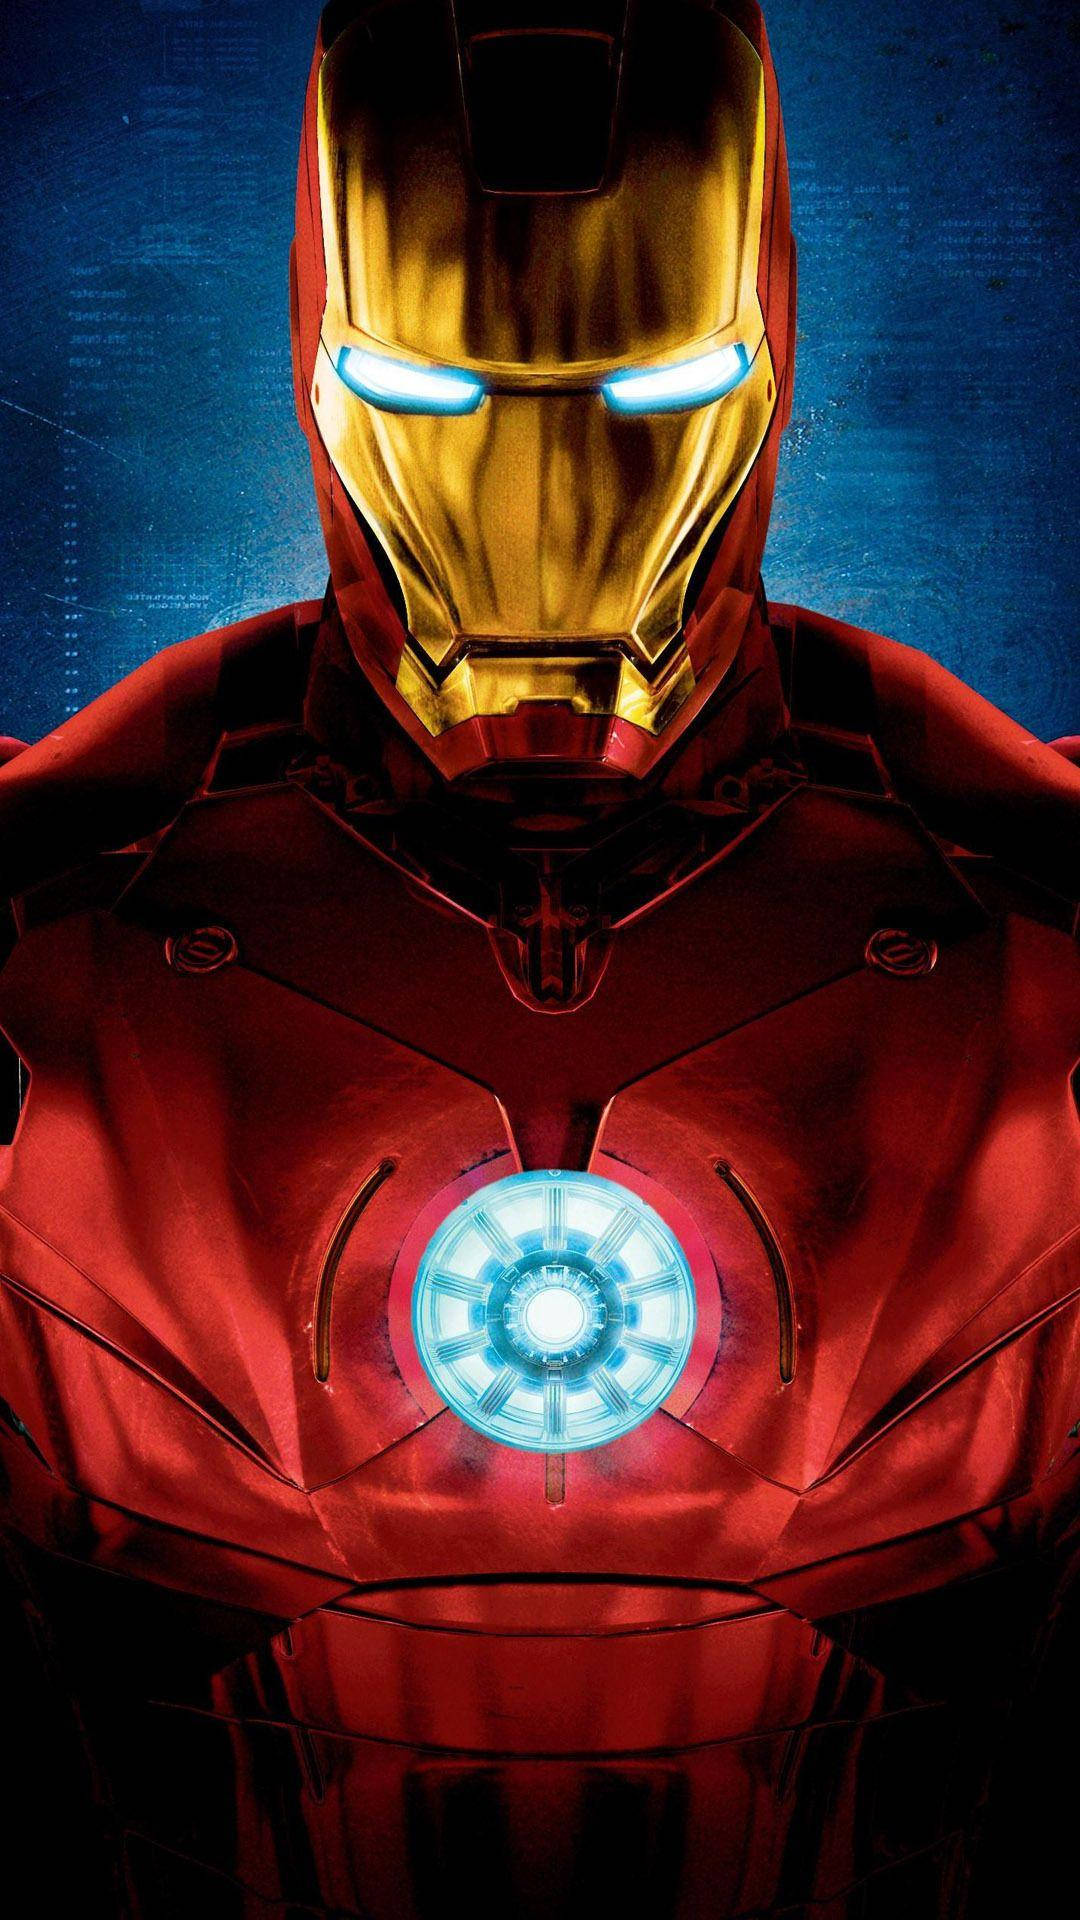 HD wallpaper: Iron Man wallpaper, abstract, blueprints, Marvel Comics,  technology | Wallpaper Flare